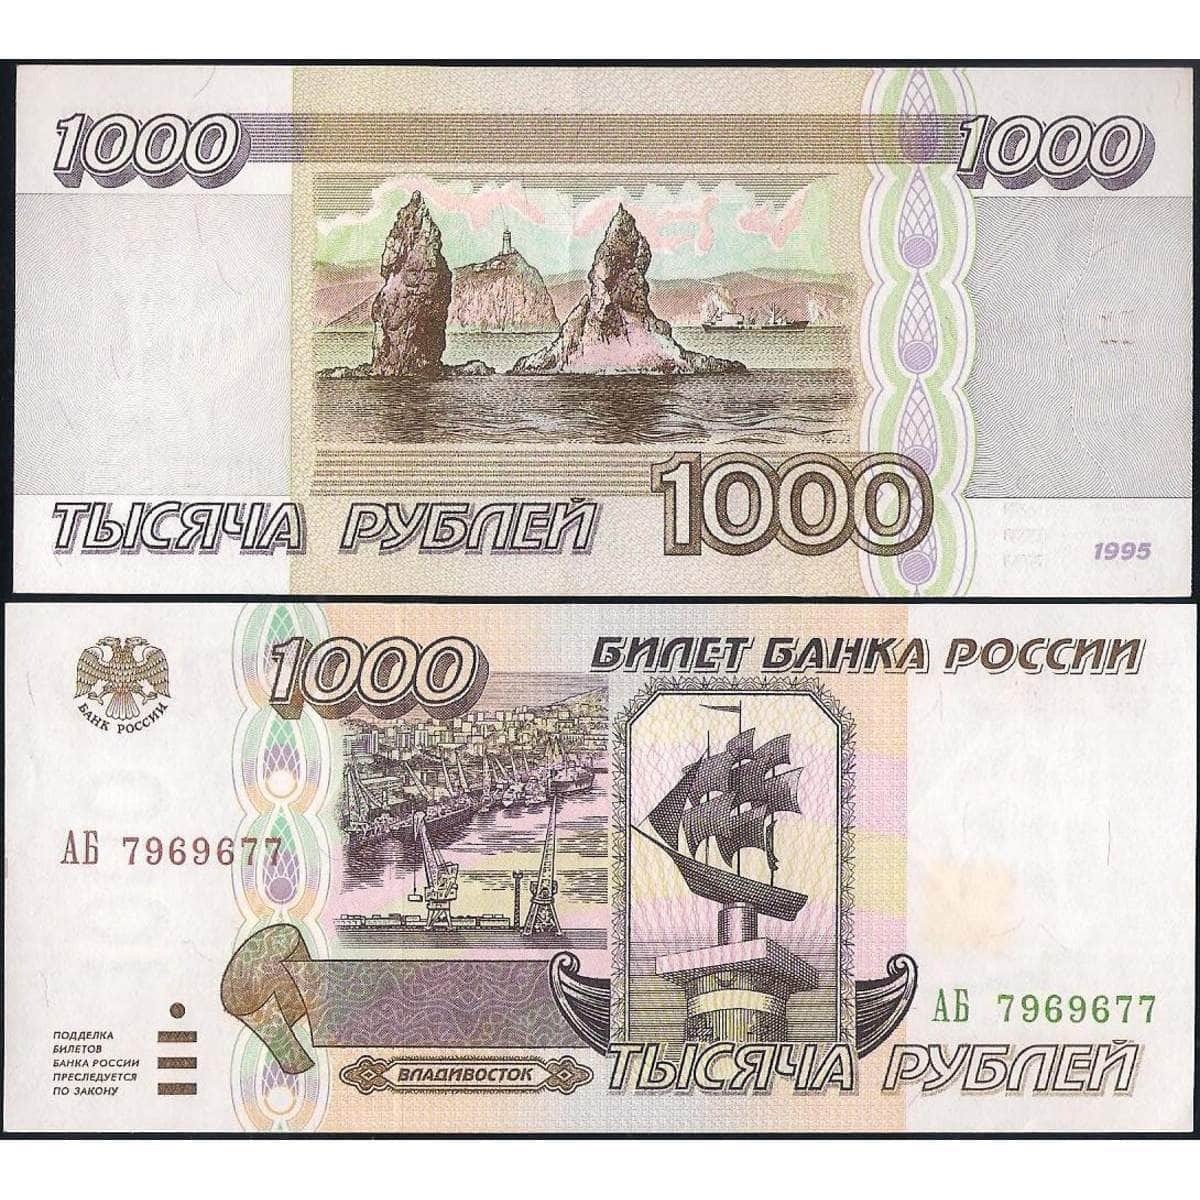 1 000 00 рублей. Тысяча рублей 1995 года. 1000 Рублей 1995 года бумажные. 1000 Купюра 1995 года. Деньги 1000 рублей 1995 года.